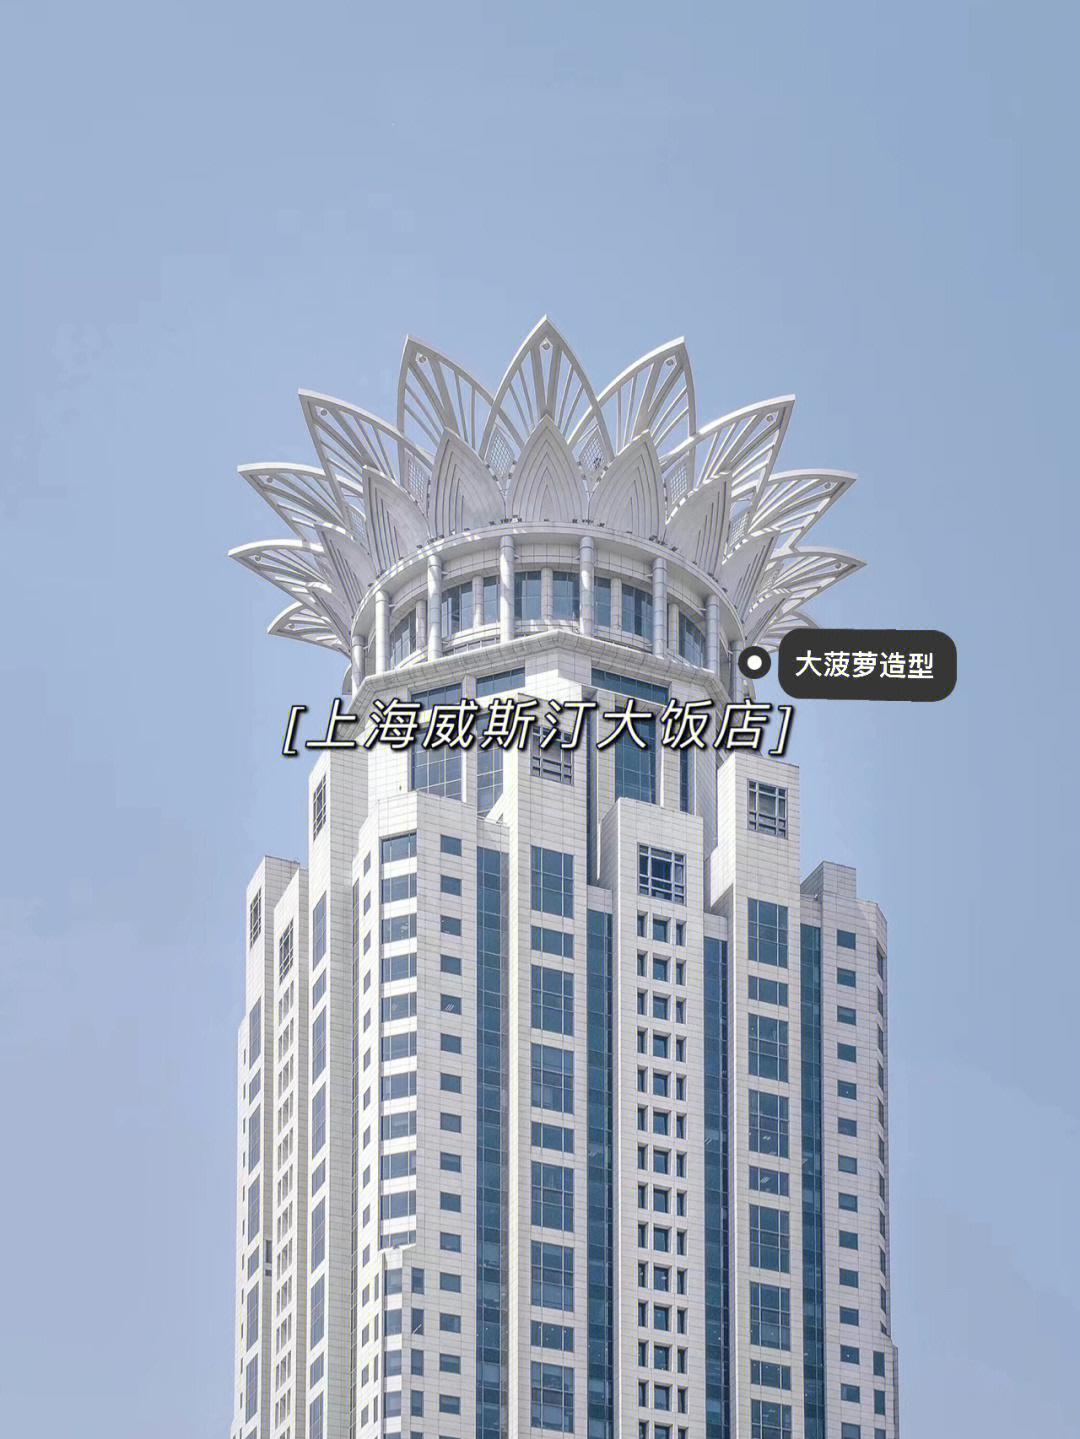 7315上海威斯汀大饭店是中国最负盛名的饭店之一93酒店设有558